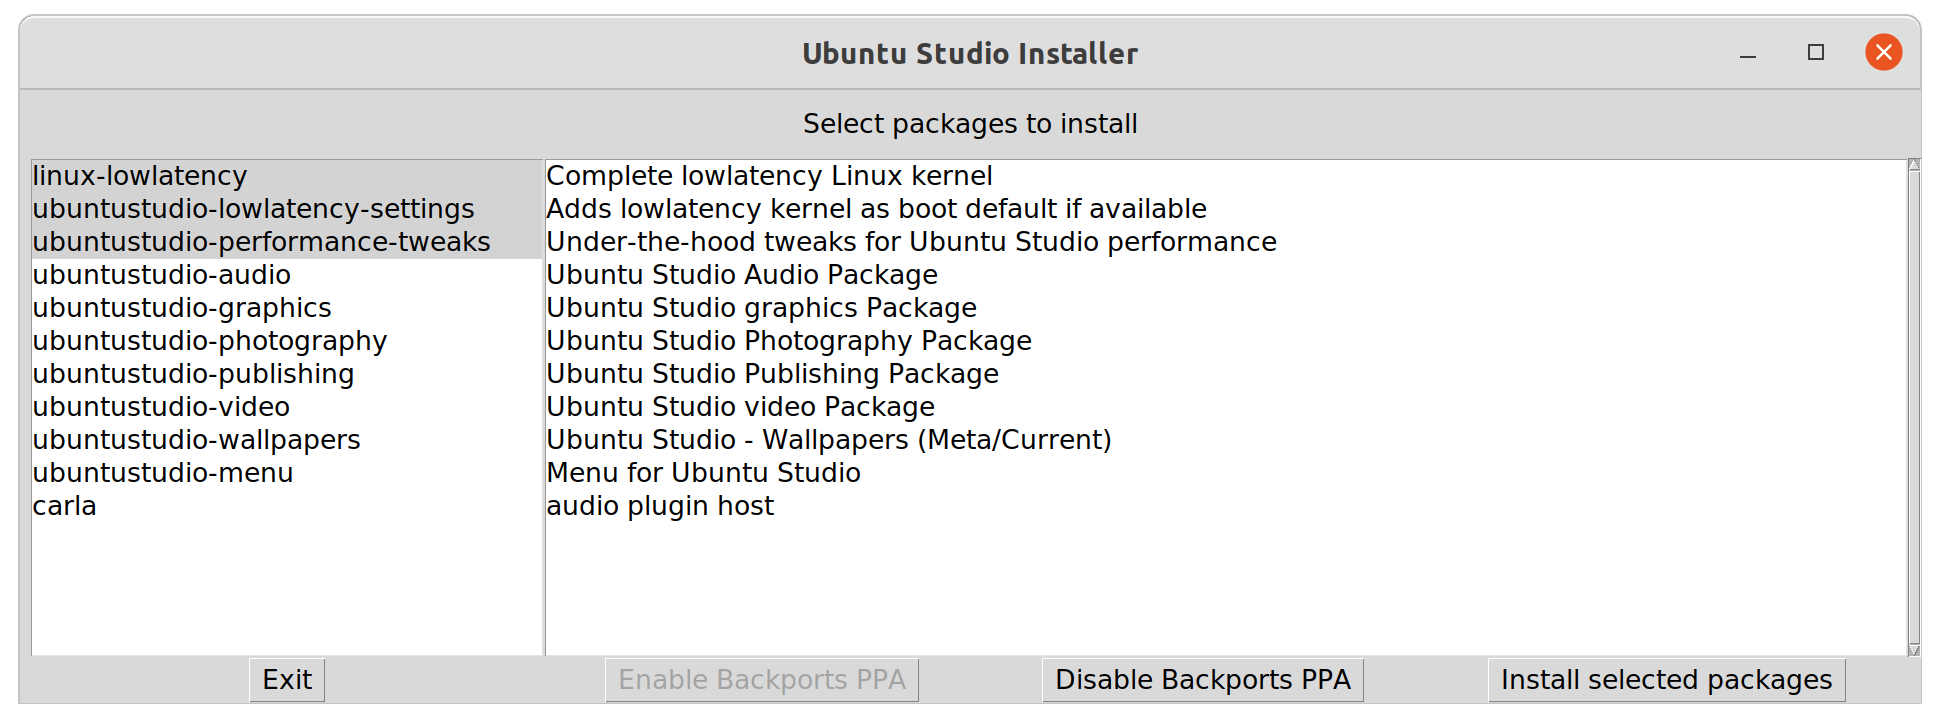 UbuntuStudioInstaller